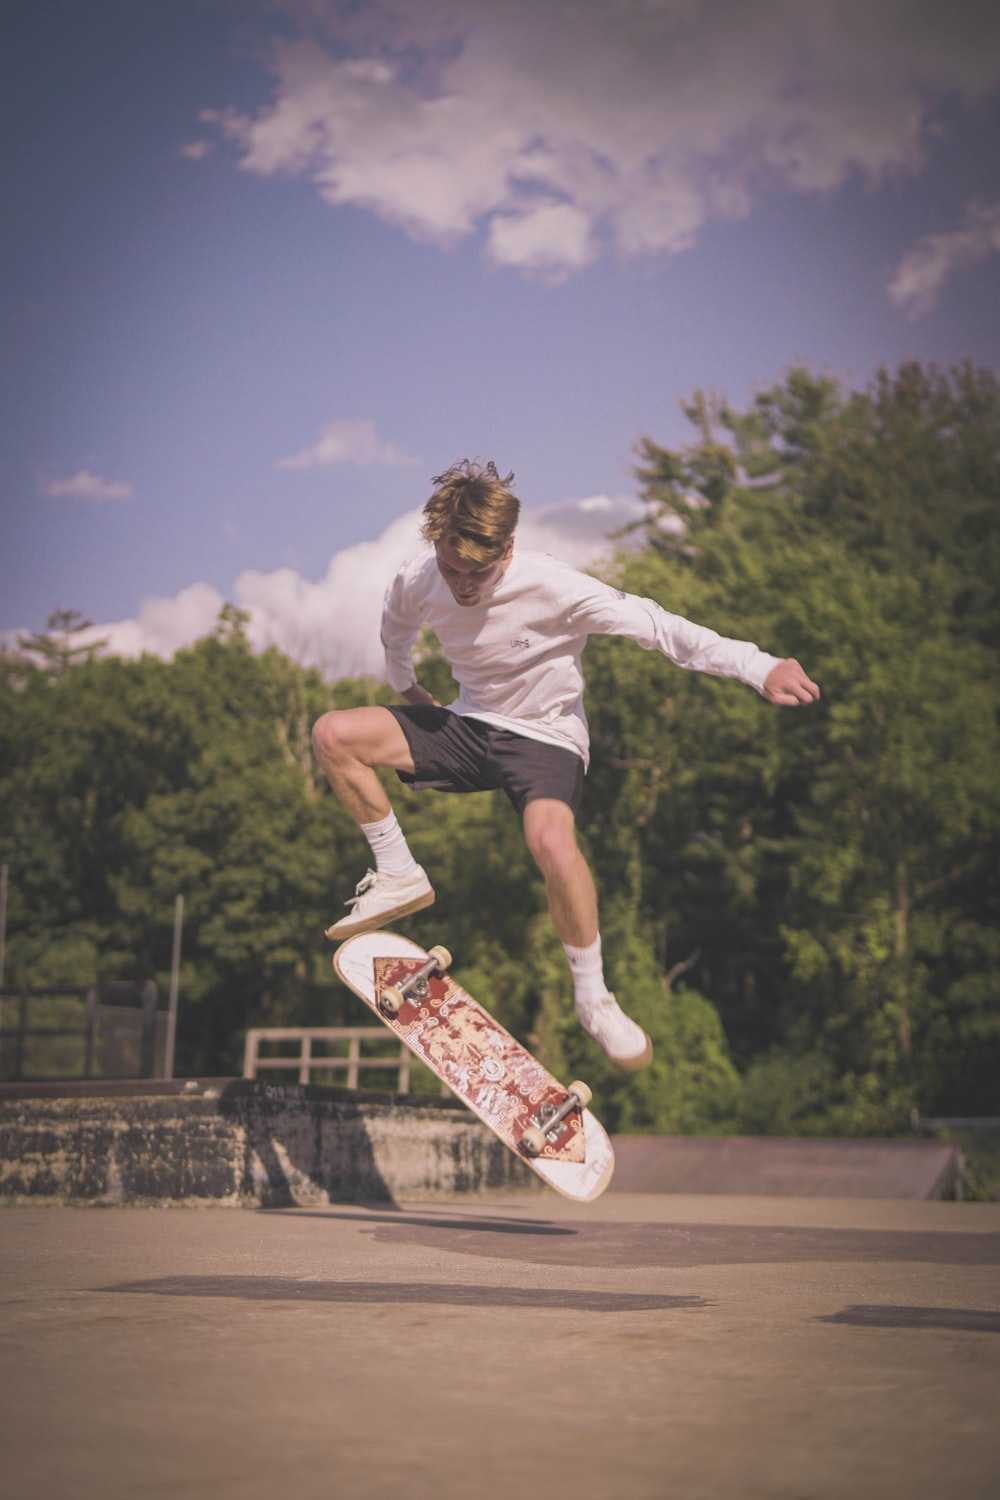 Skateboard Aesthetic Wallpaper Skateboarding Ollie Stock Photo 1865763358   Shutterstock